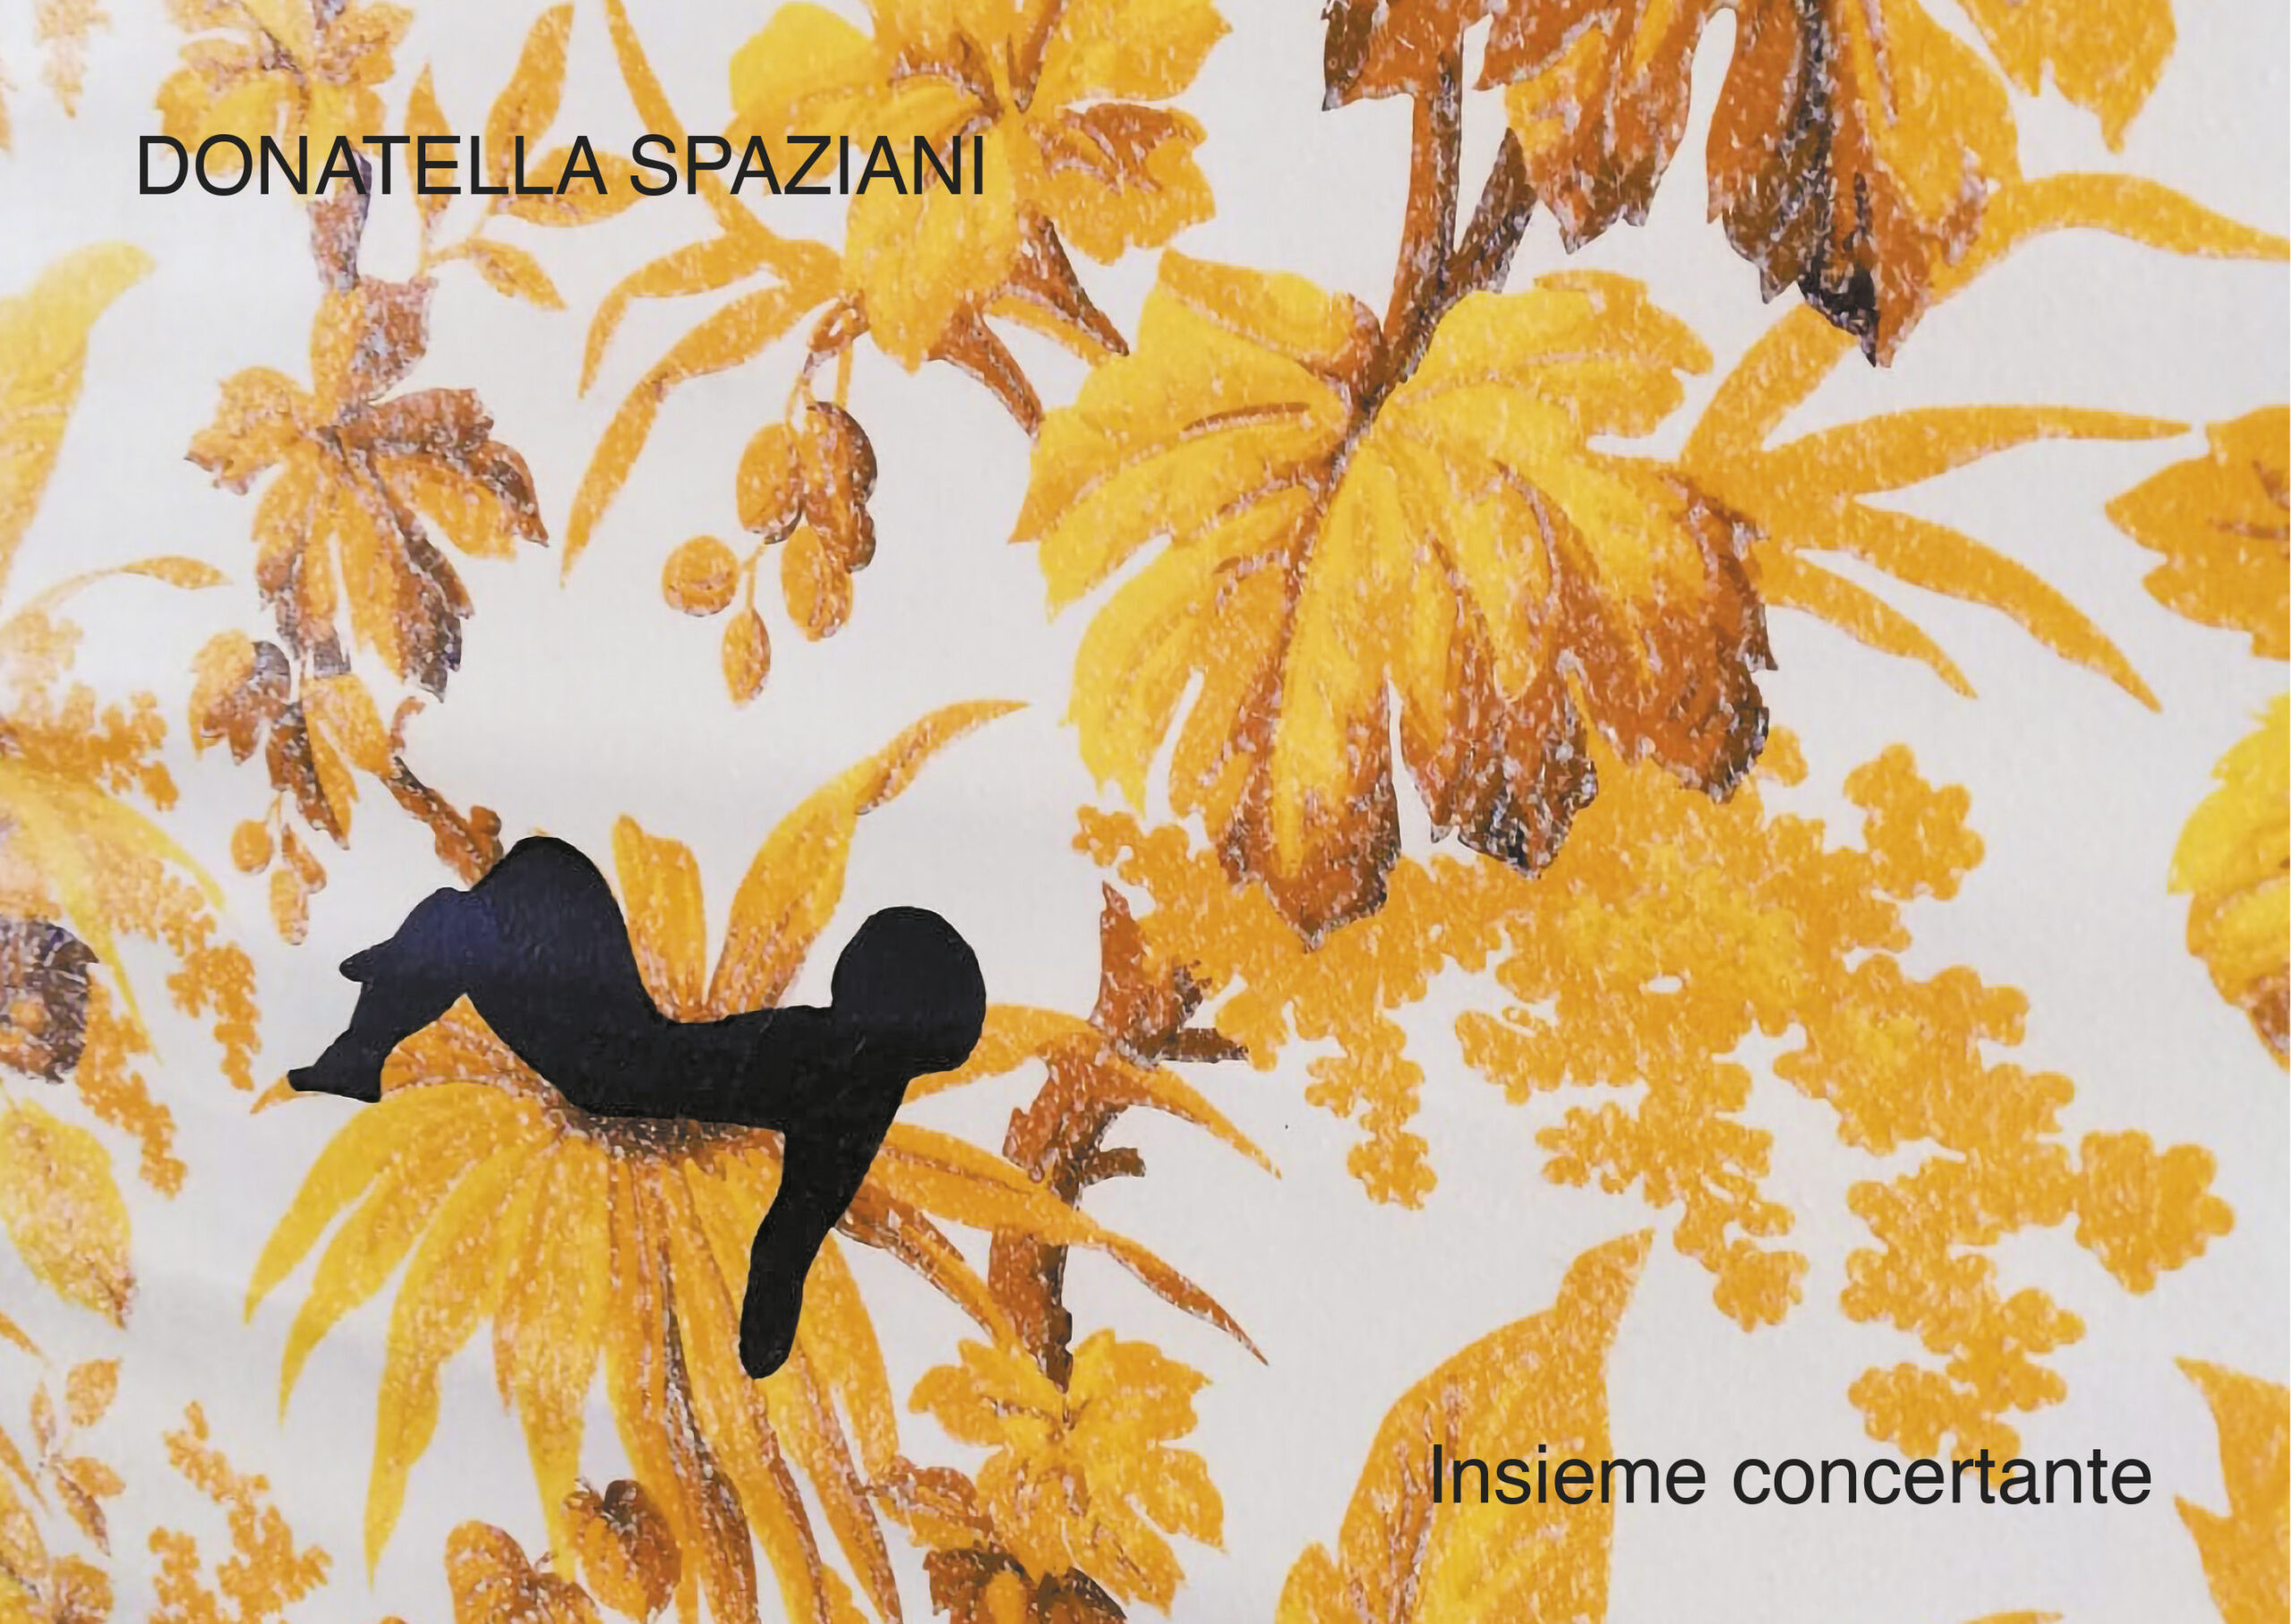 Donatella Spaziani - Insieme concertante